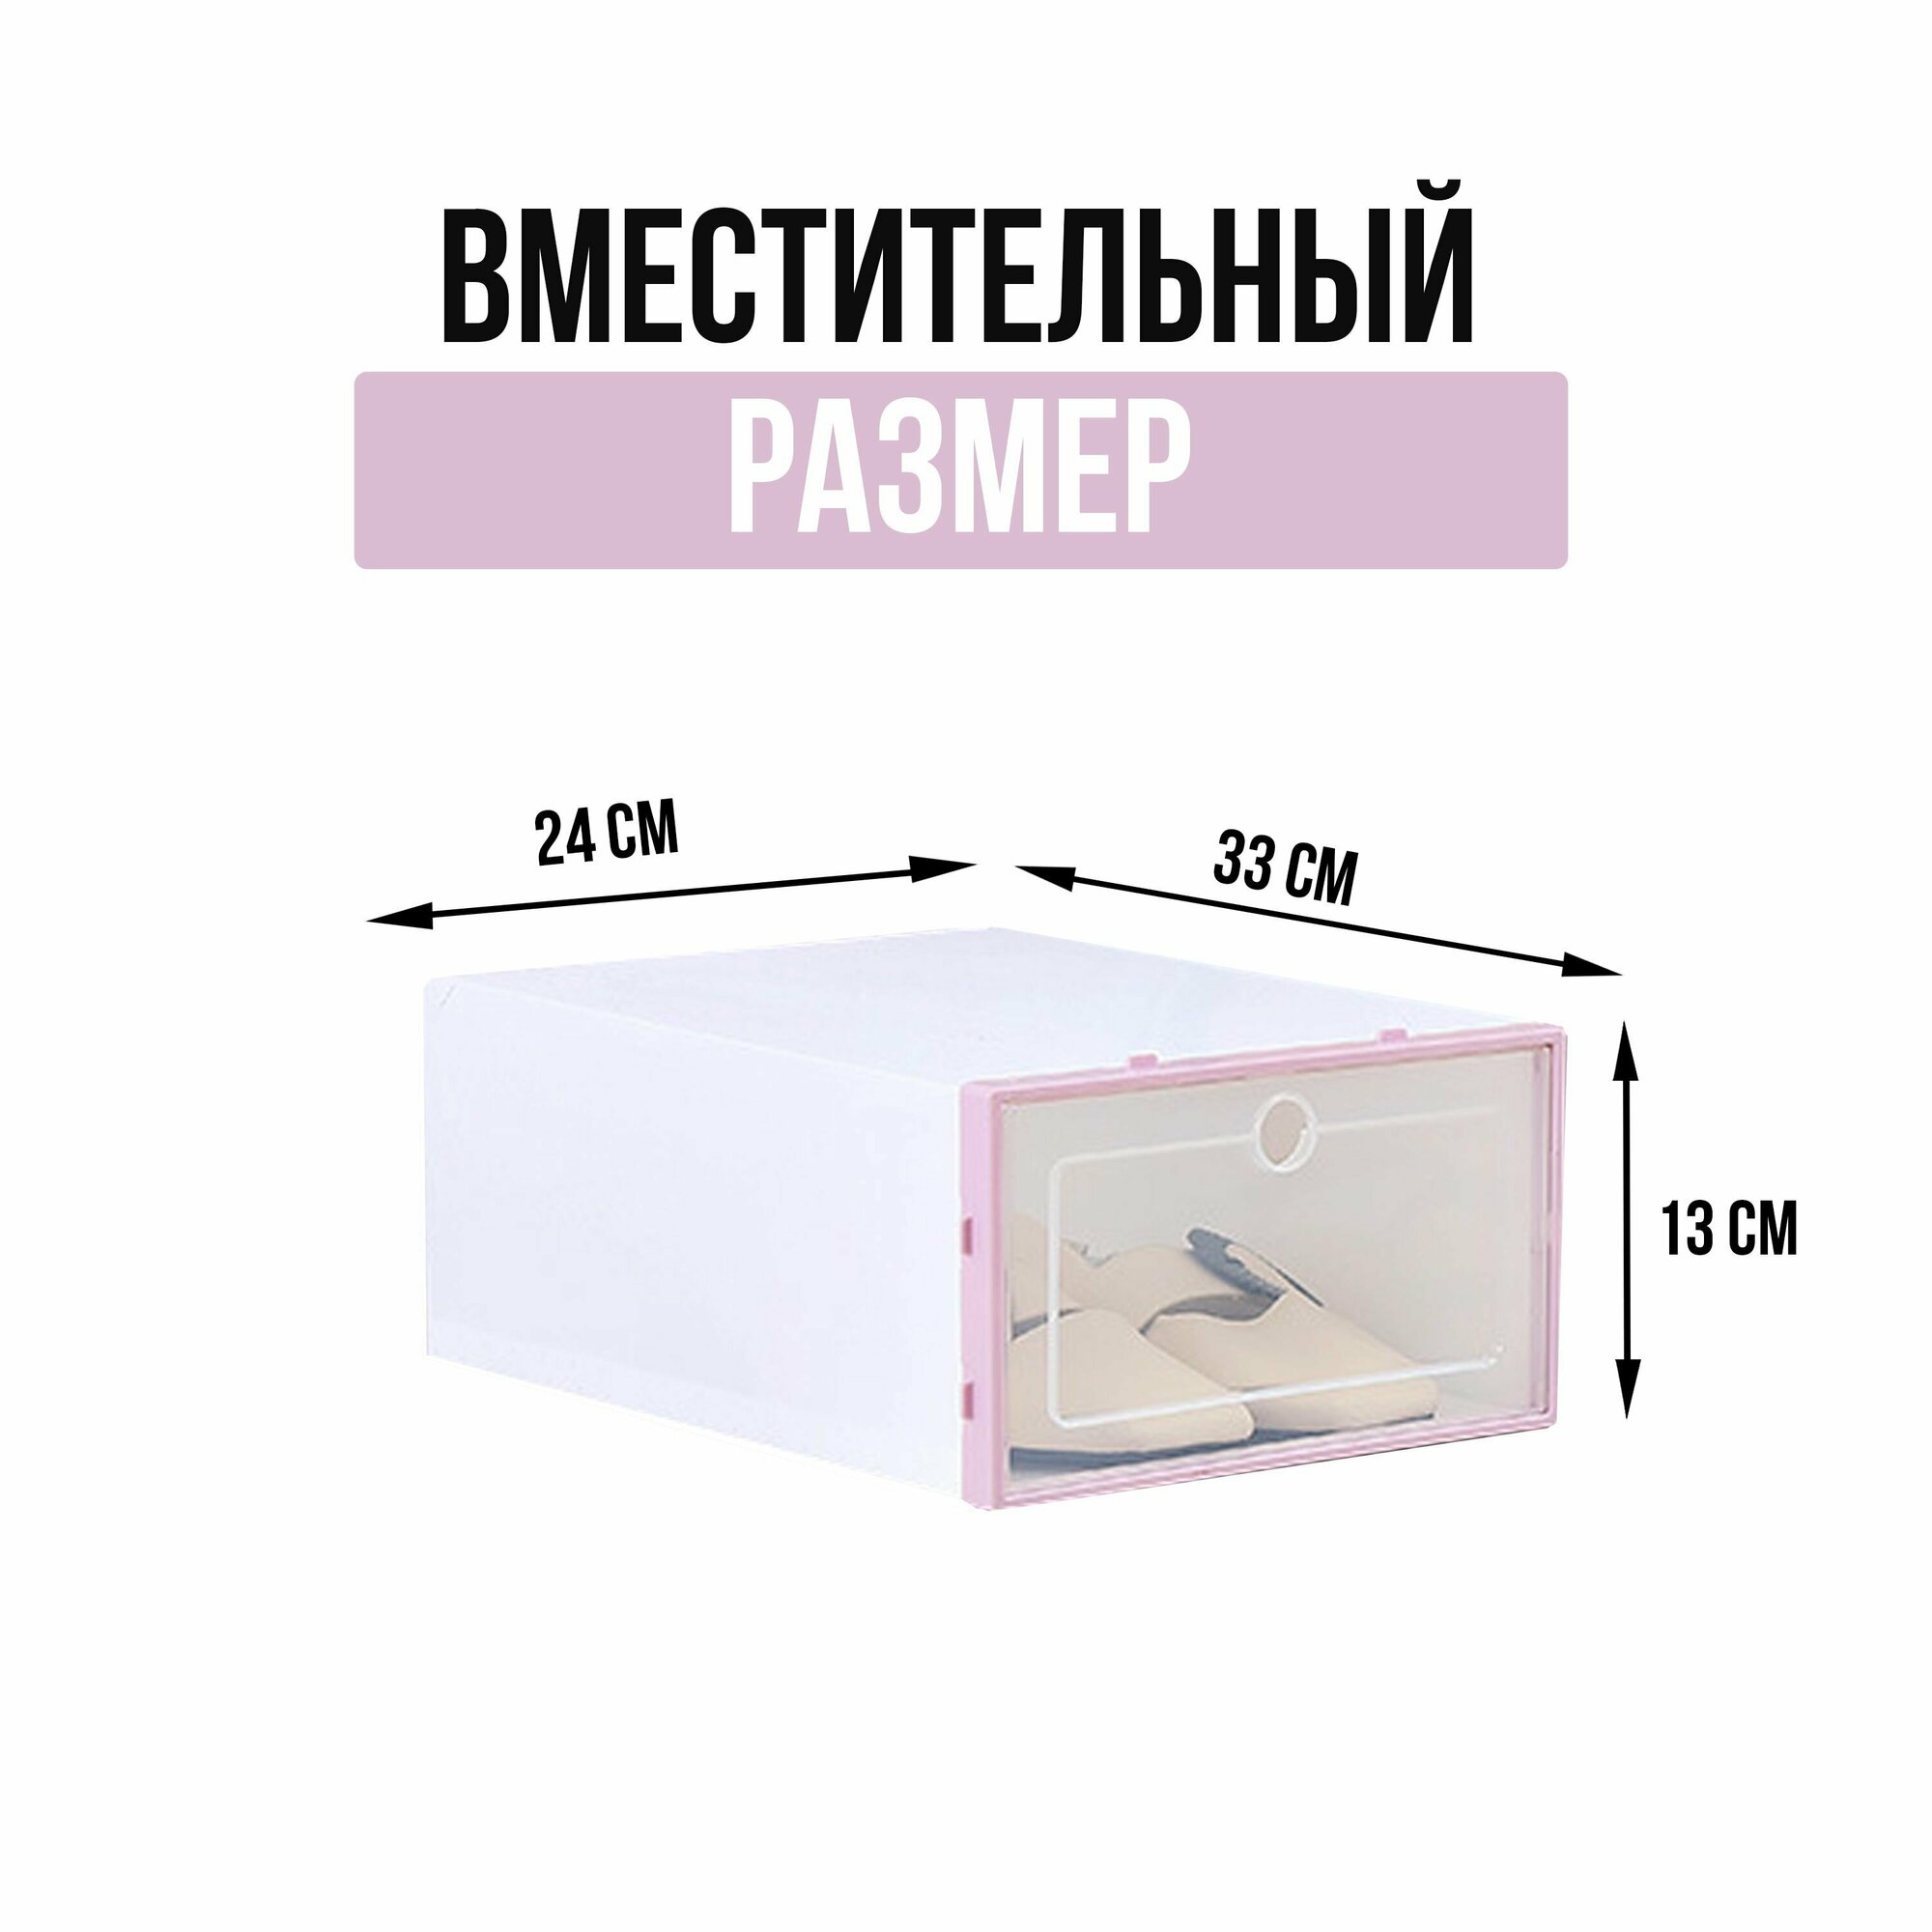 Коробки для хранения обуви пластиковые с крышкой, 3 шт 33х24х14 см, органайзер контейнер для обуви и вещей, цвет белый и розовый - фотография № 2